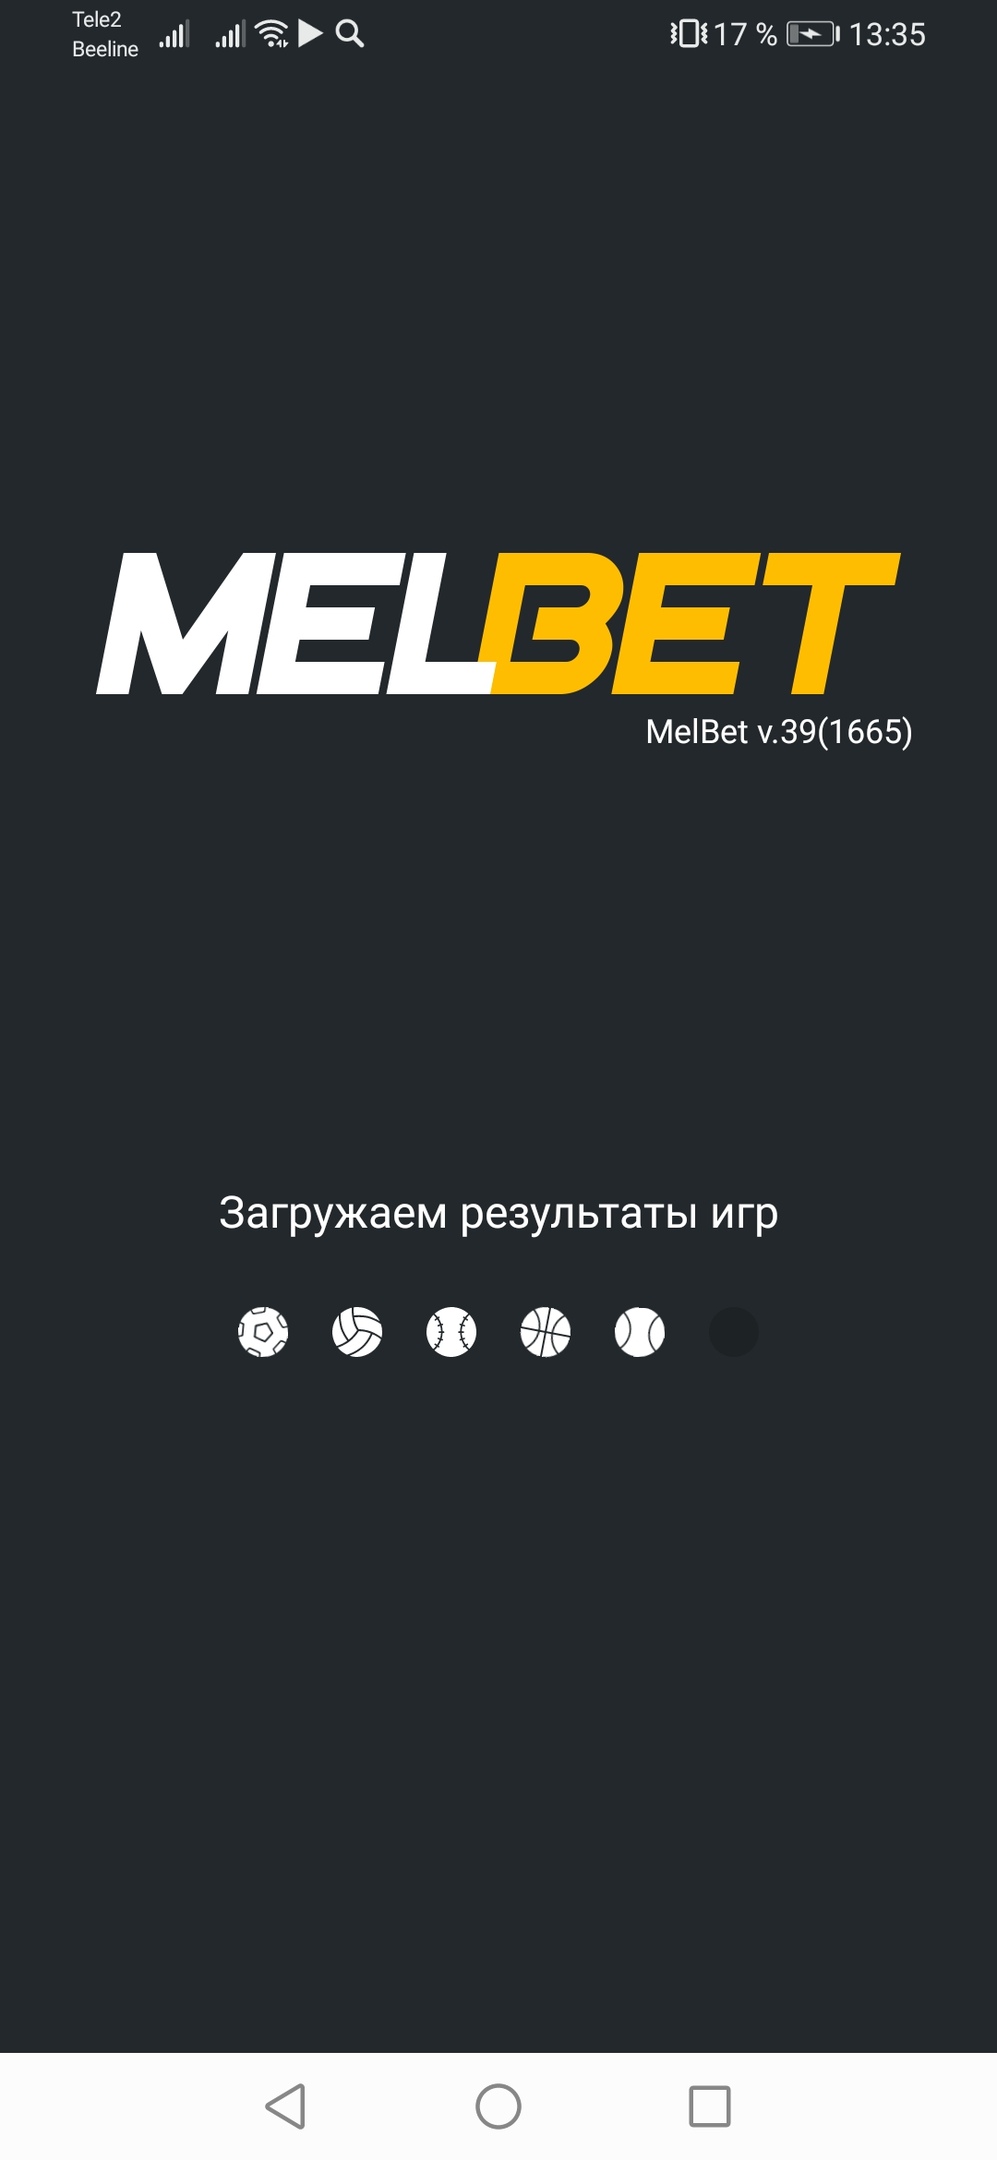 Var match tv приложение для андроид. Мелбет. Melbet приложение. Melbet logo. Постеры Мелбет.